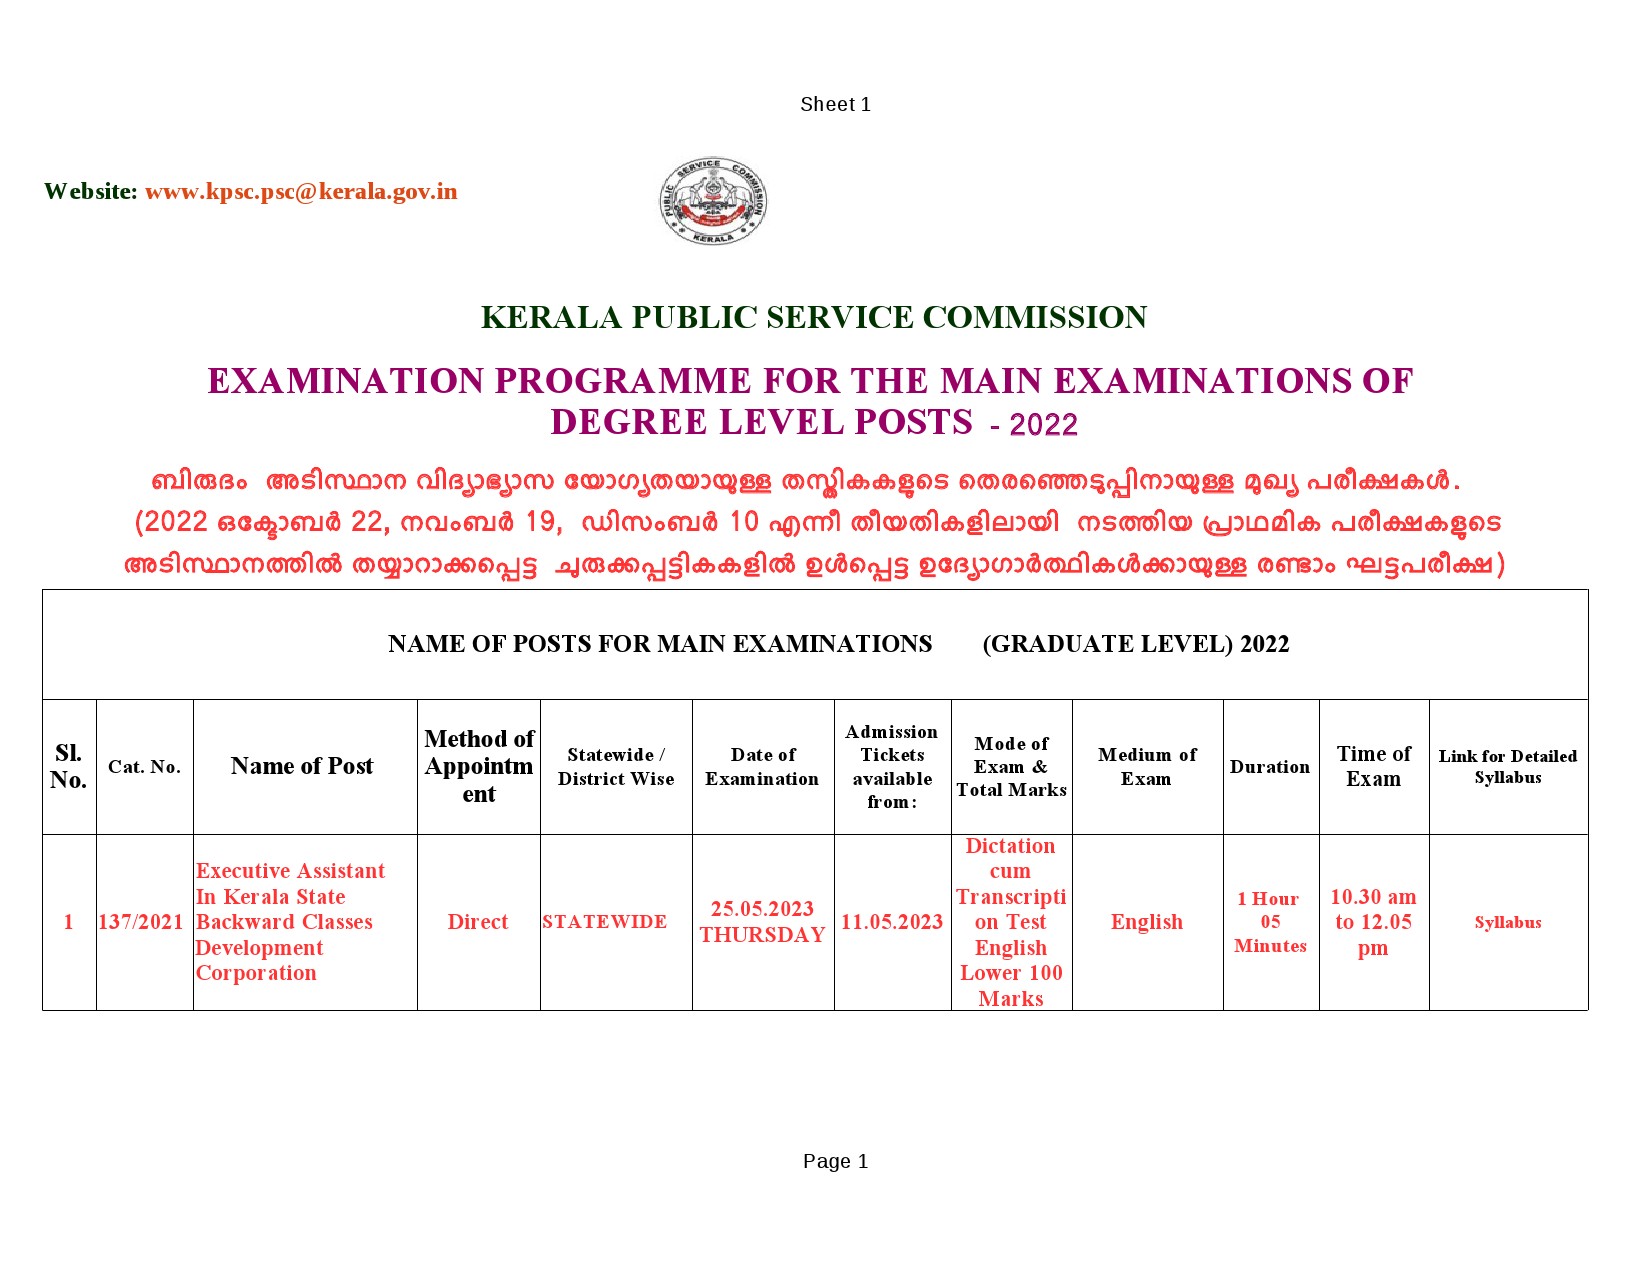 Degree Level Main Examination Programme 2022 - Notification Image 1